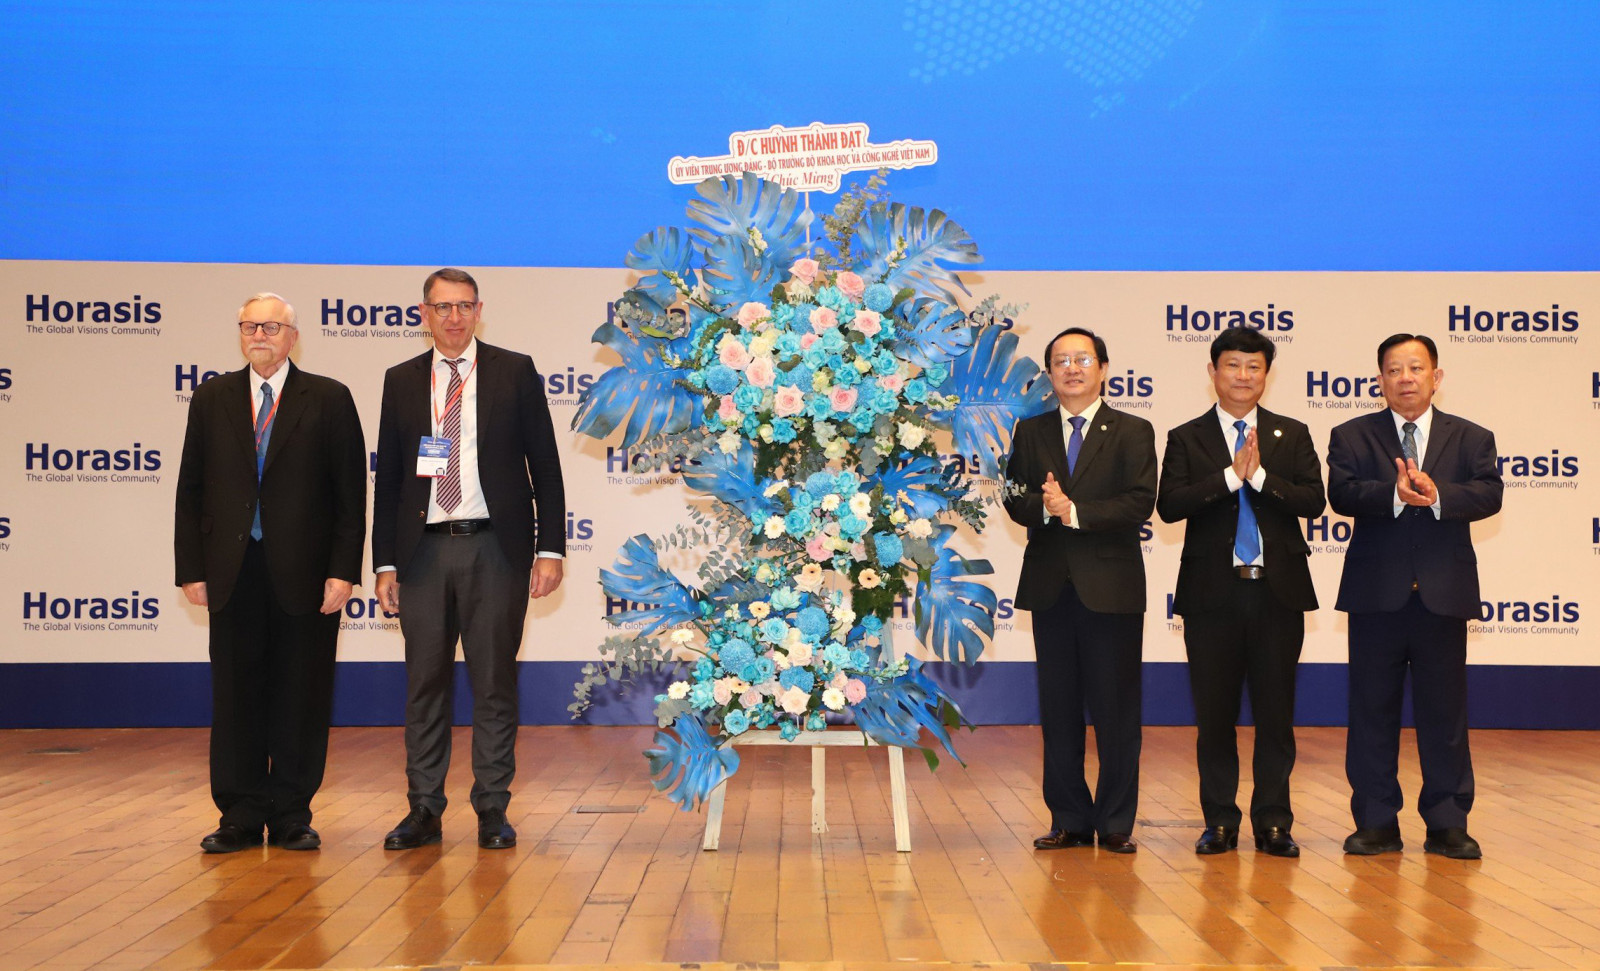 Đòng chí Huỳnh Thành Đạt, Bộ trưởng Bộ KHCN tặng hoa chúc mừng khai mạc Diễn đàn